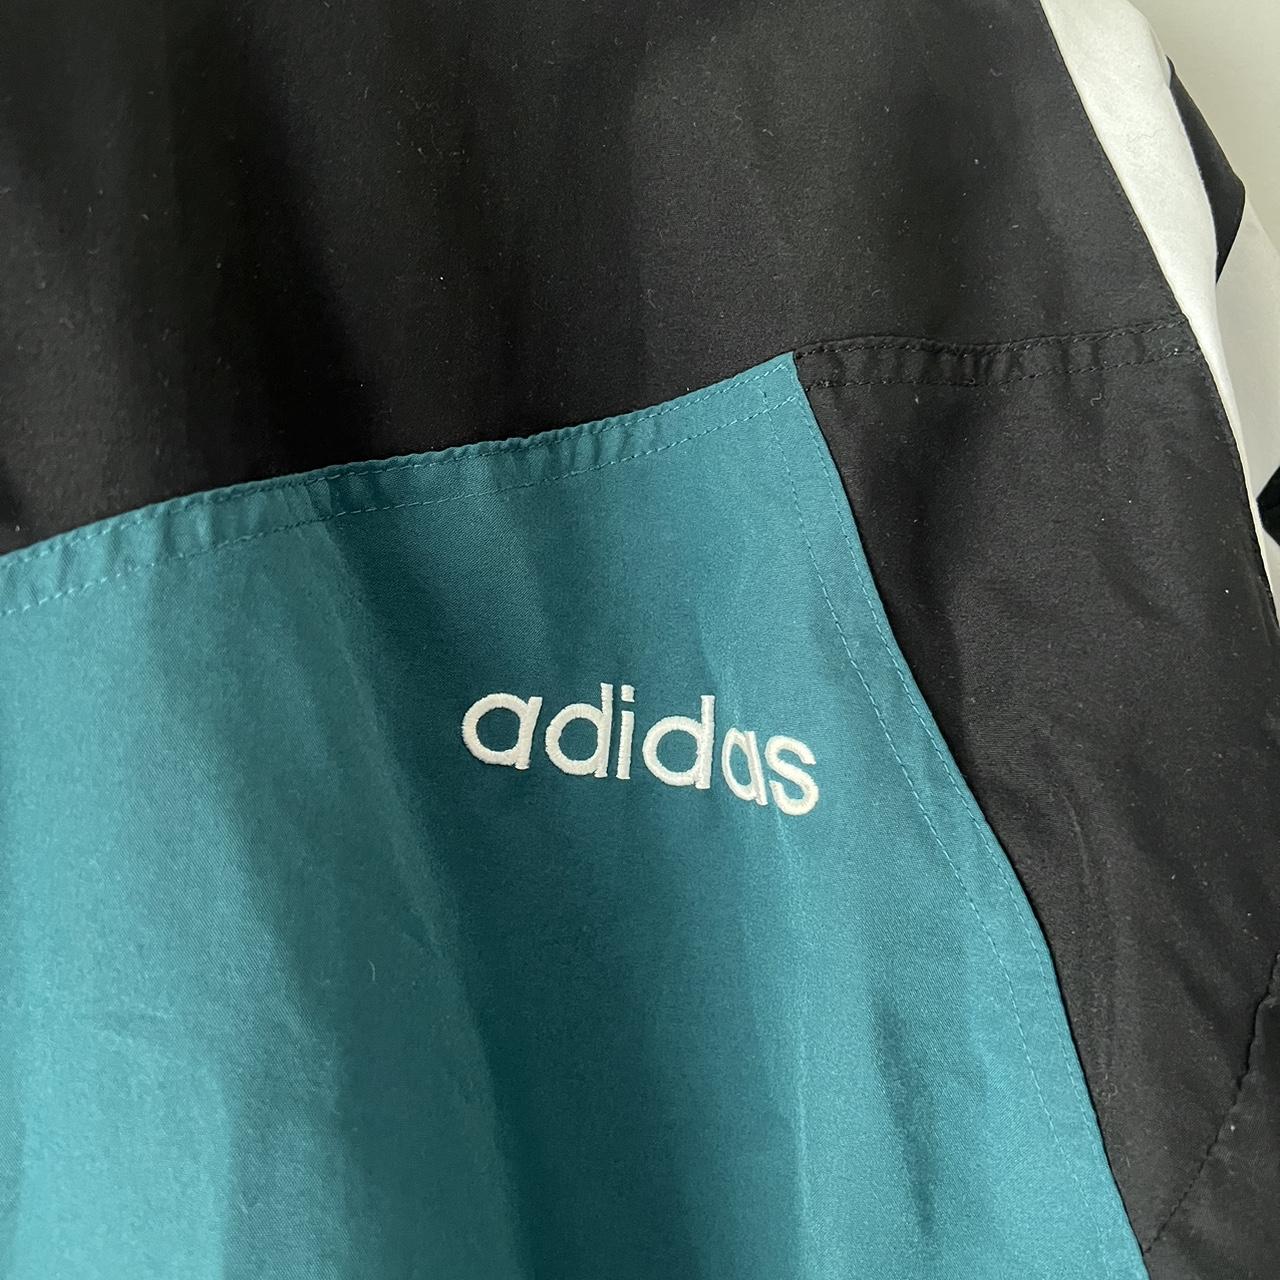 Adidas Originals x NIGO Track Jacket - This rare and - Depop